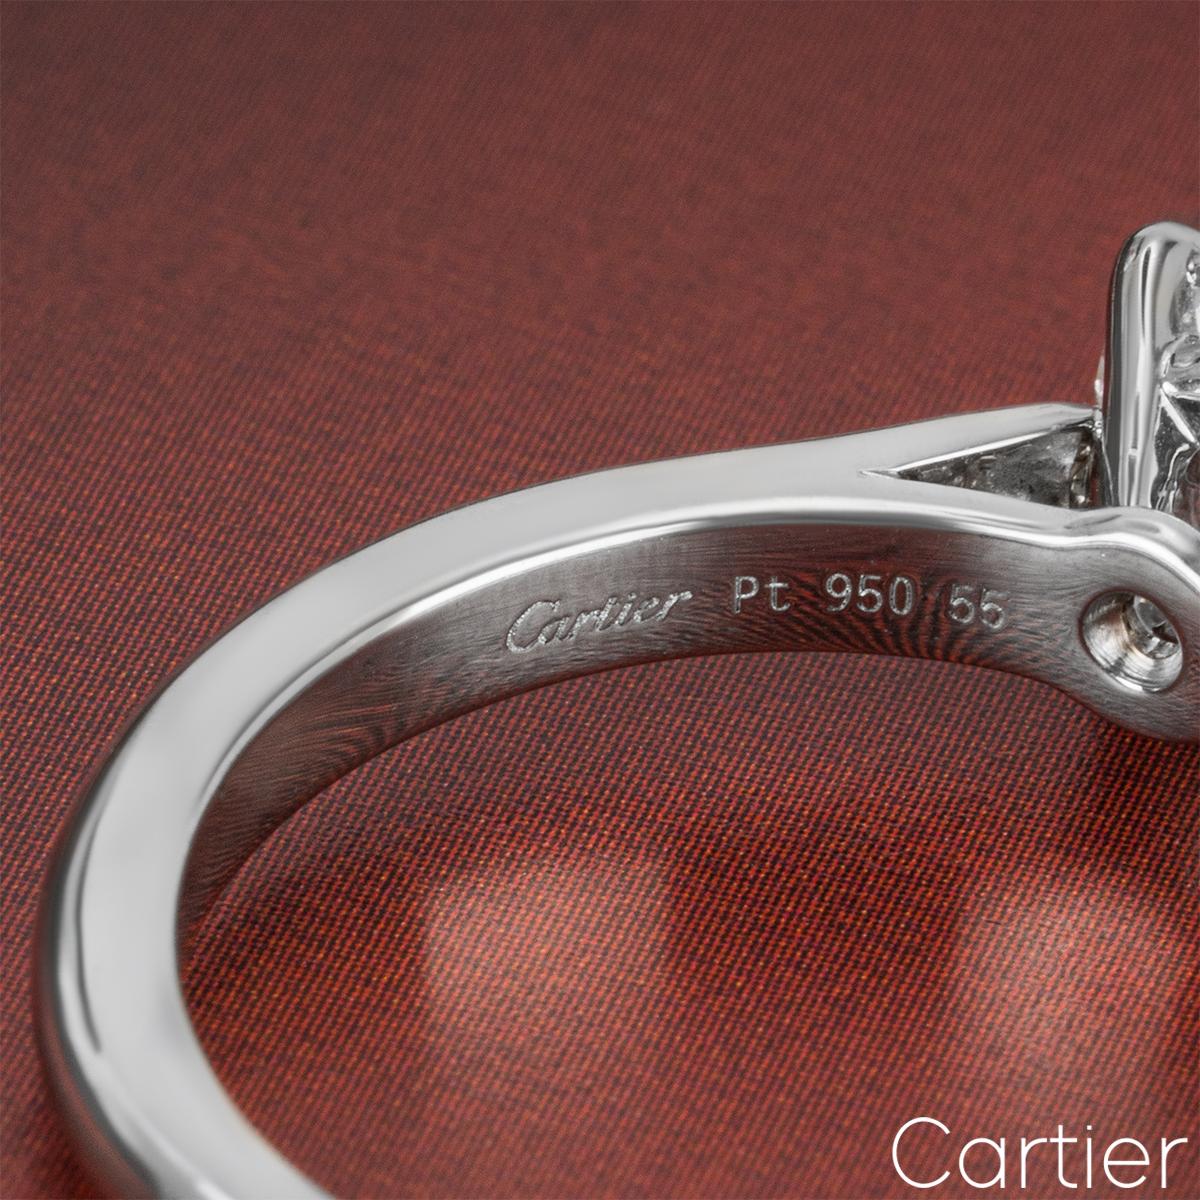 Cartier Platinum Diamond Solitaire 1895 Ring 1.21 Carat F/VVS1 For Sale 1